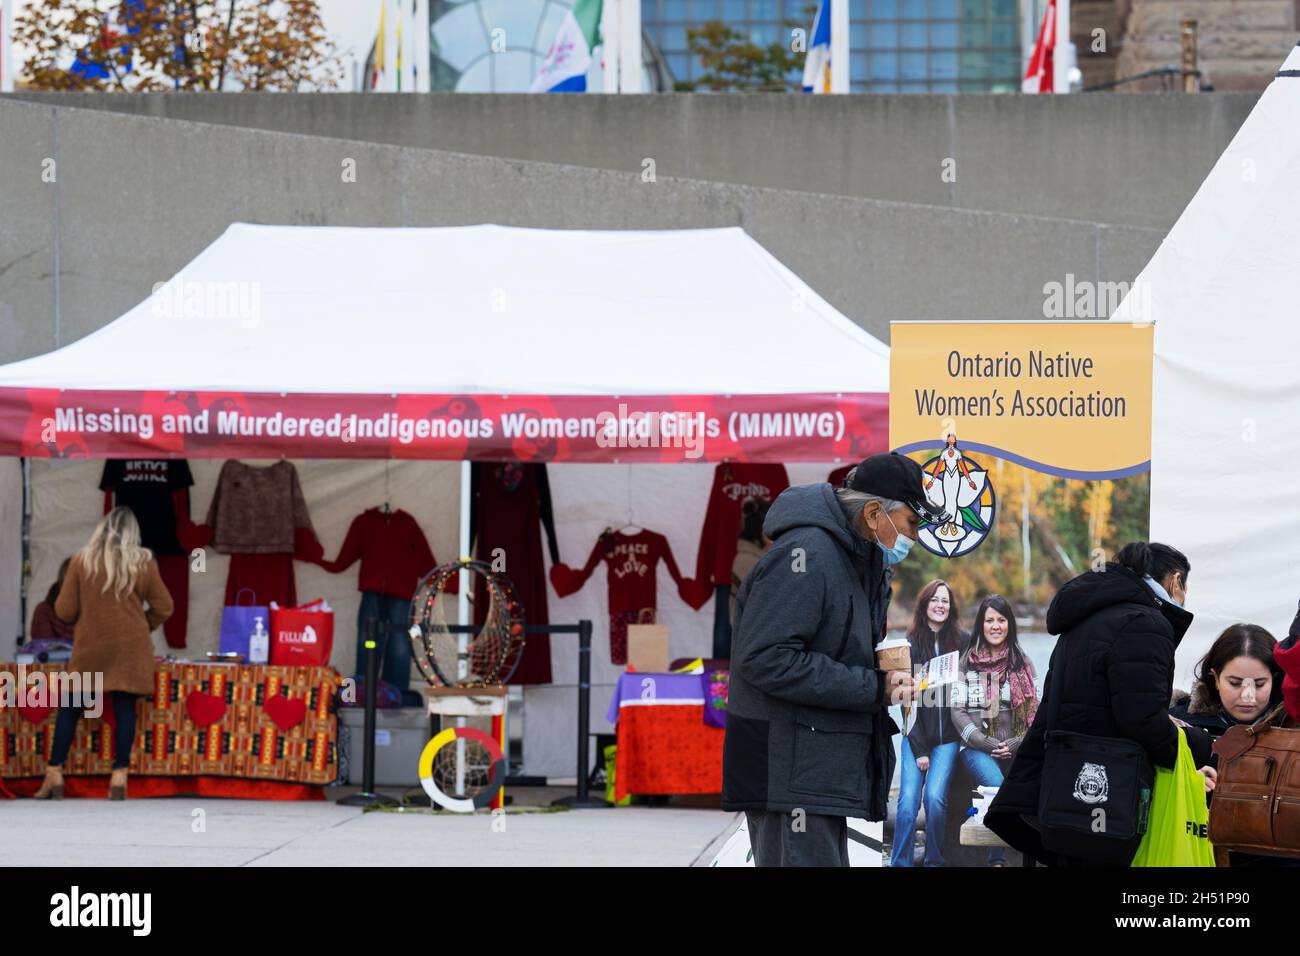 Vermisste und ermordete indigene Frauen und Mädchen (MMIWG) Booth und Ontario Womne's Association auf der Indigenous Legacy Gathering, in Toronto, Kanada Stockfoto